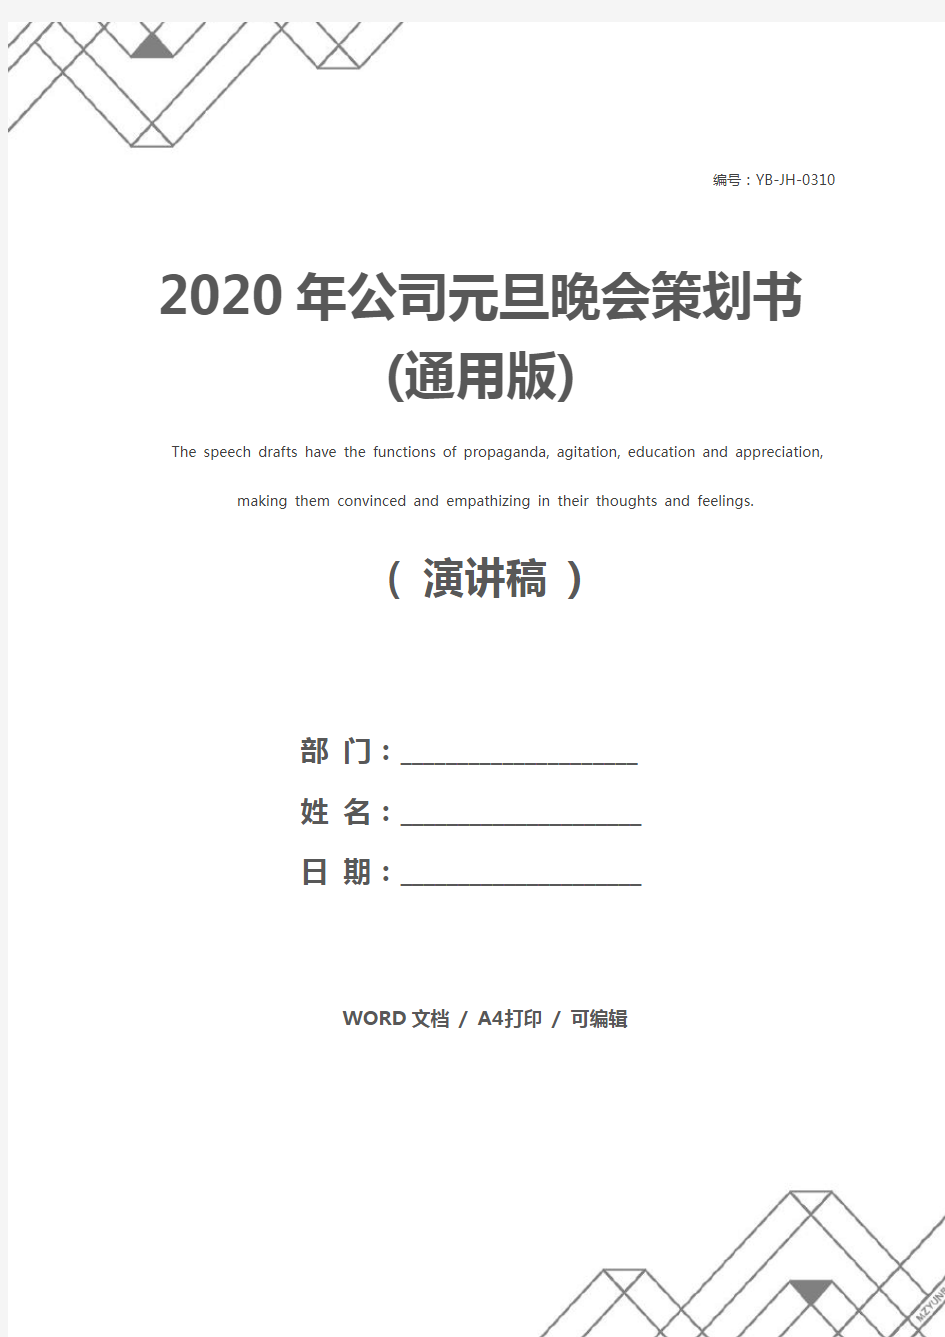 2020年公司元旦晚会策划书(通用版)